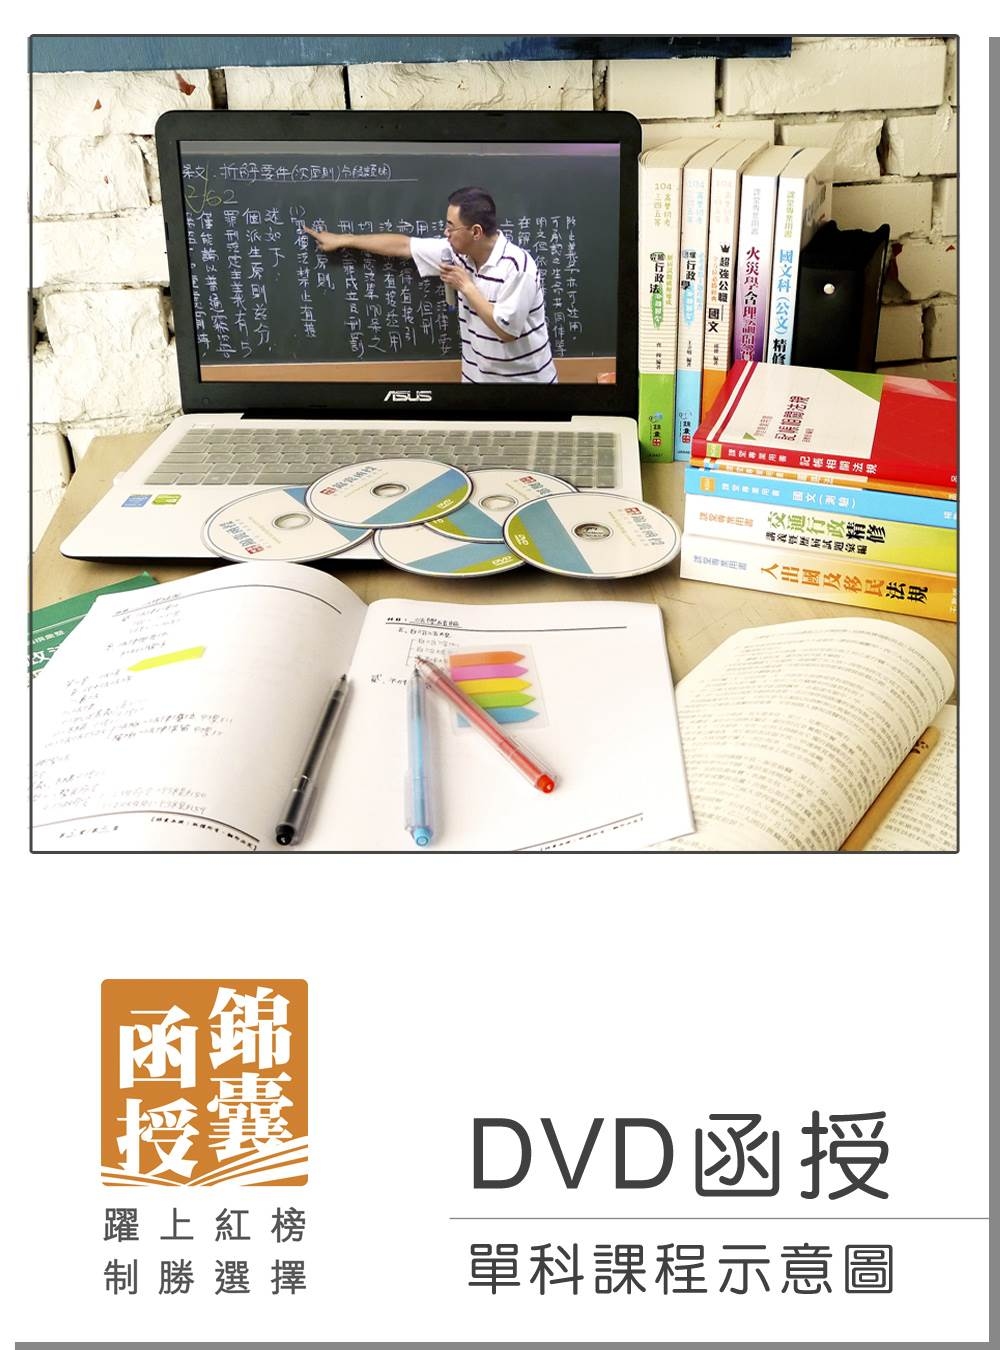 【DVD函授】國籍與戶政法規(正規班&進階班)-單科課程(105版)